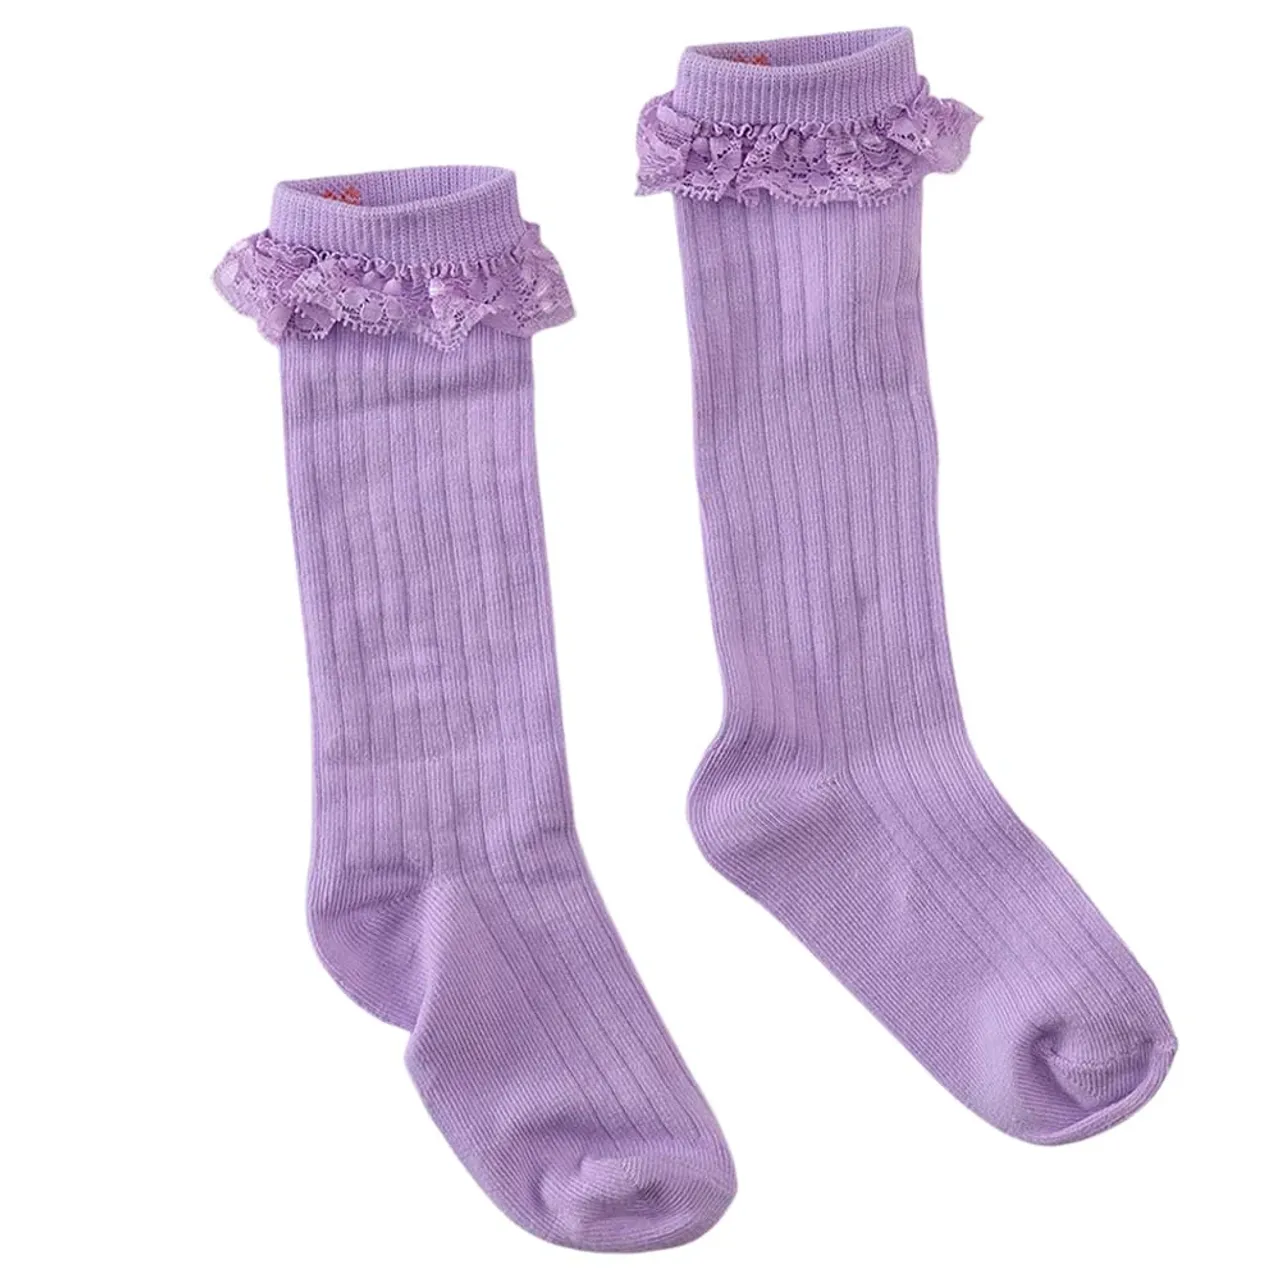 Z8 meisjes sokken